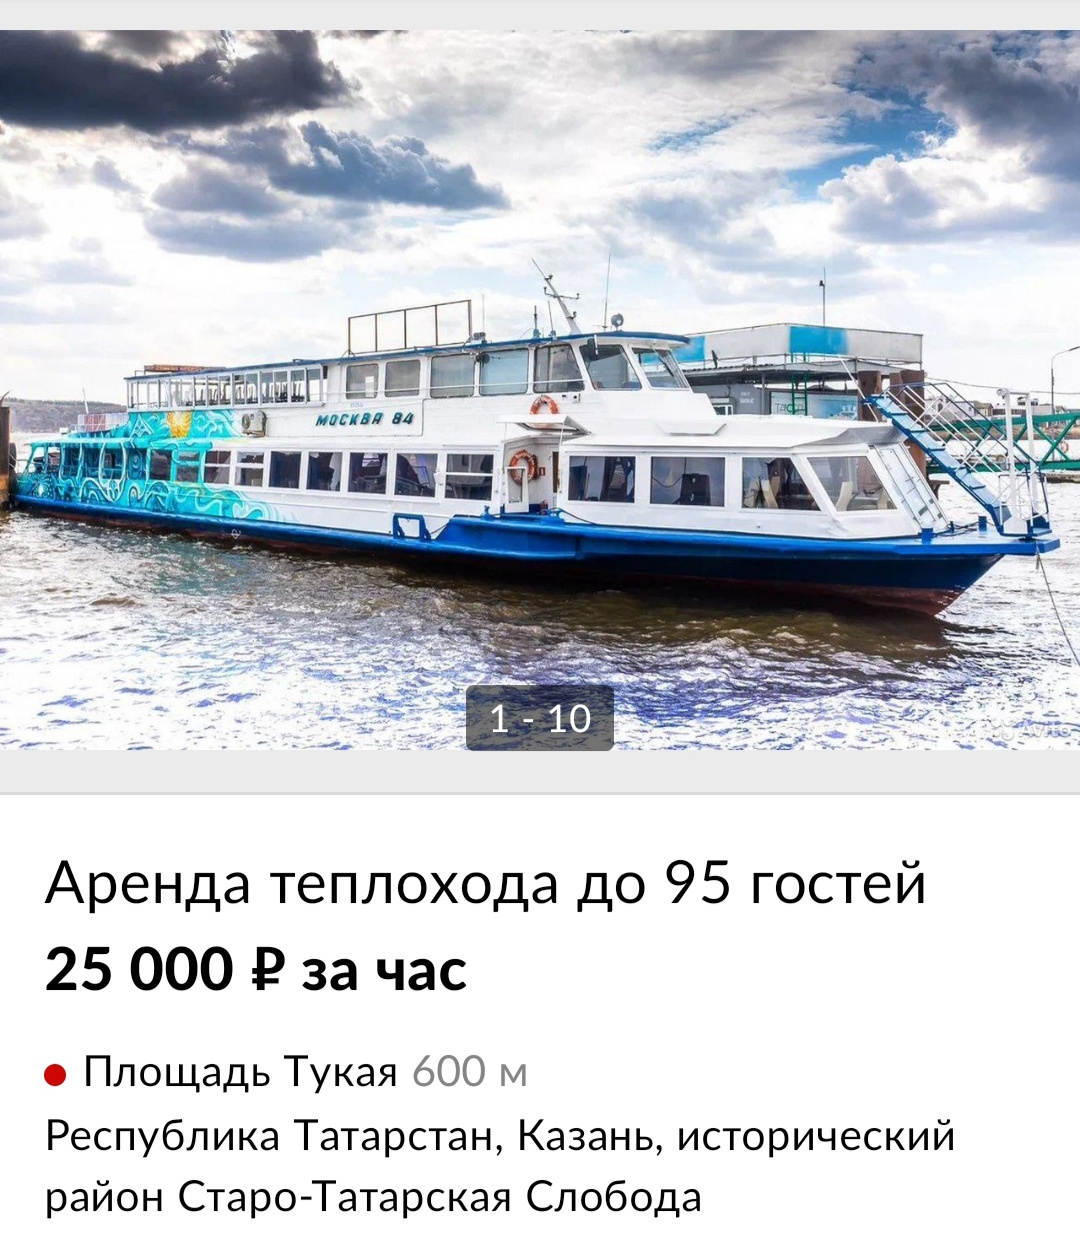 Бывший столичный теплоход «Москва-84» теперь можно арендовать в Казани